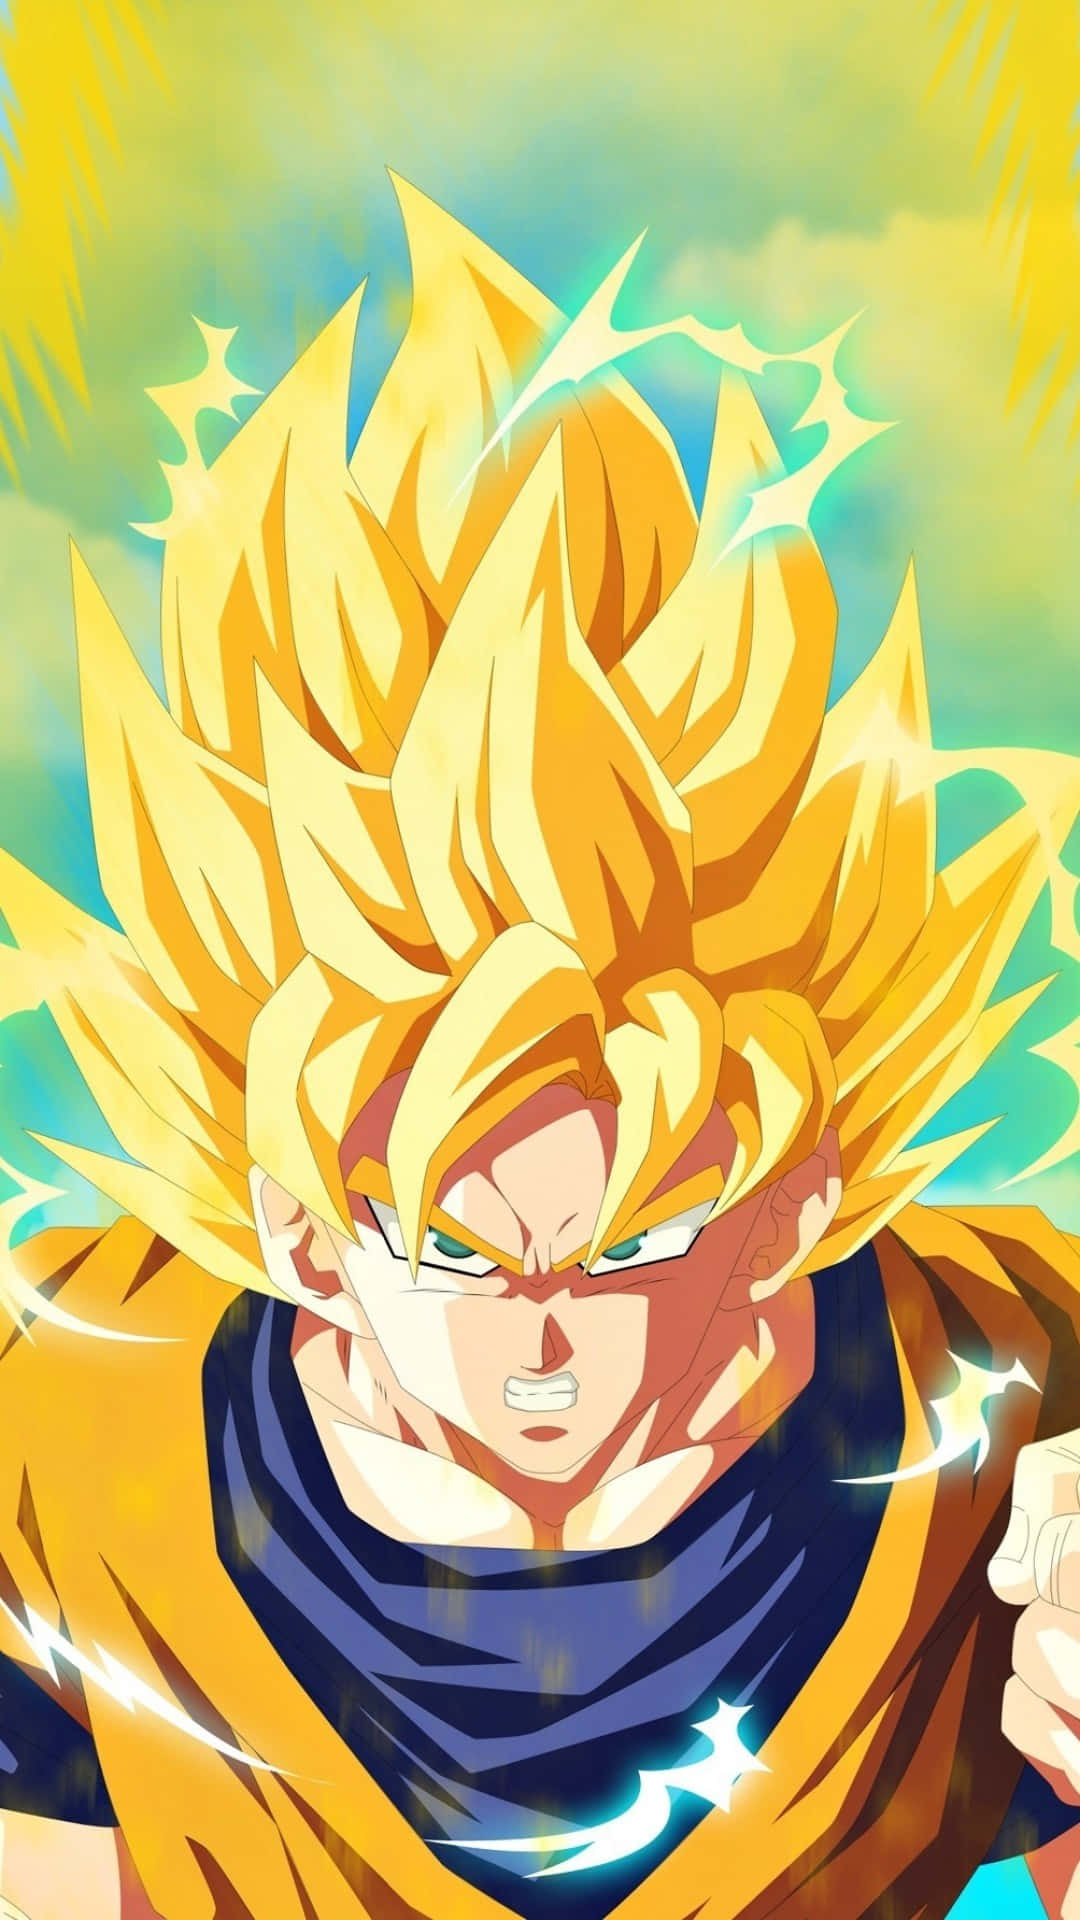 Imagemdo Goku Em Dragon Ball Z Na Cor Amarelo Dourado.